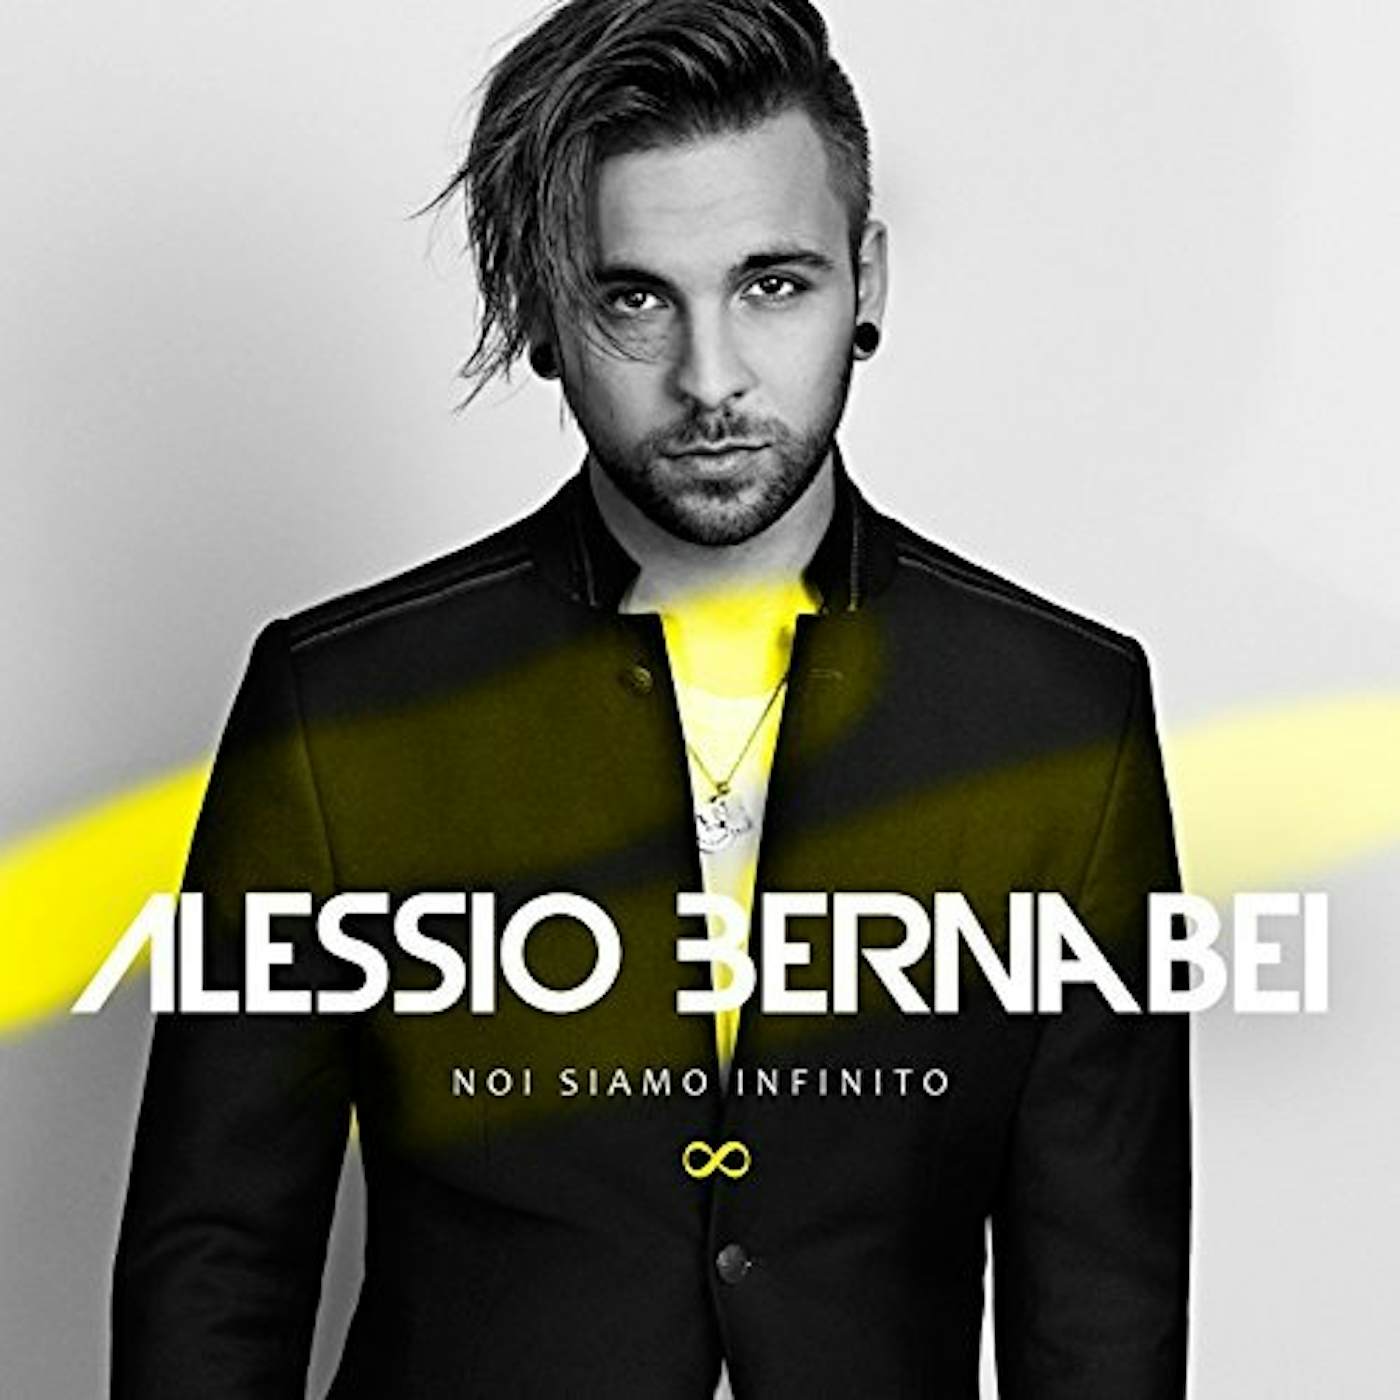 Alessio Bernabei NOI SIAMO INFINITO CD